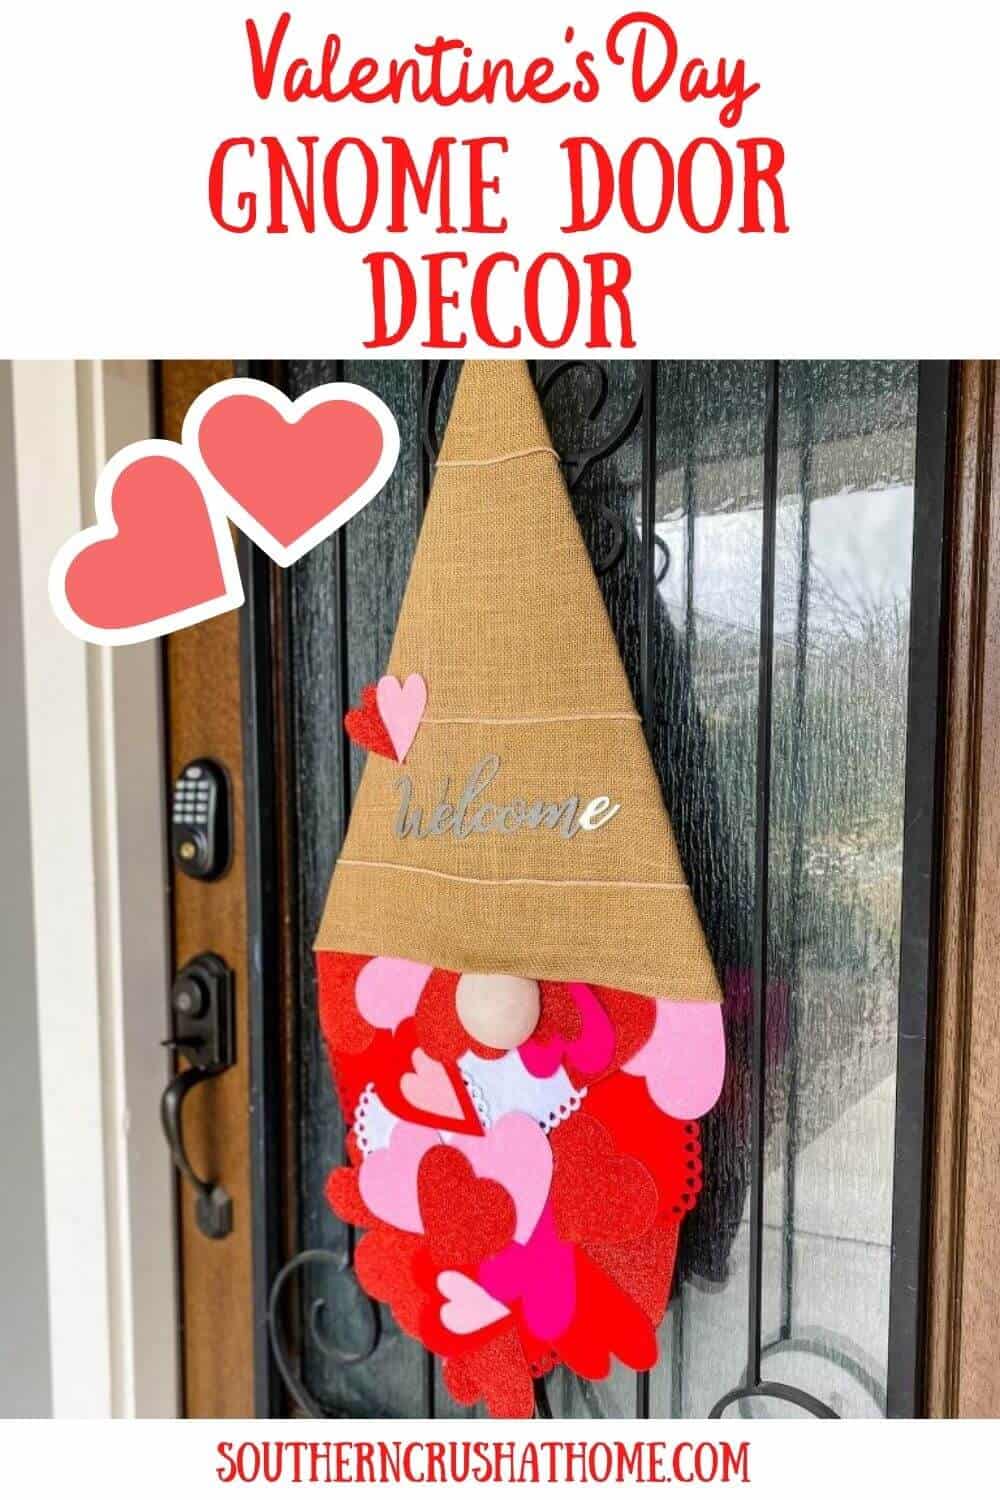 Valentine's Day Gnome door decor on front door